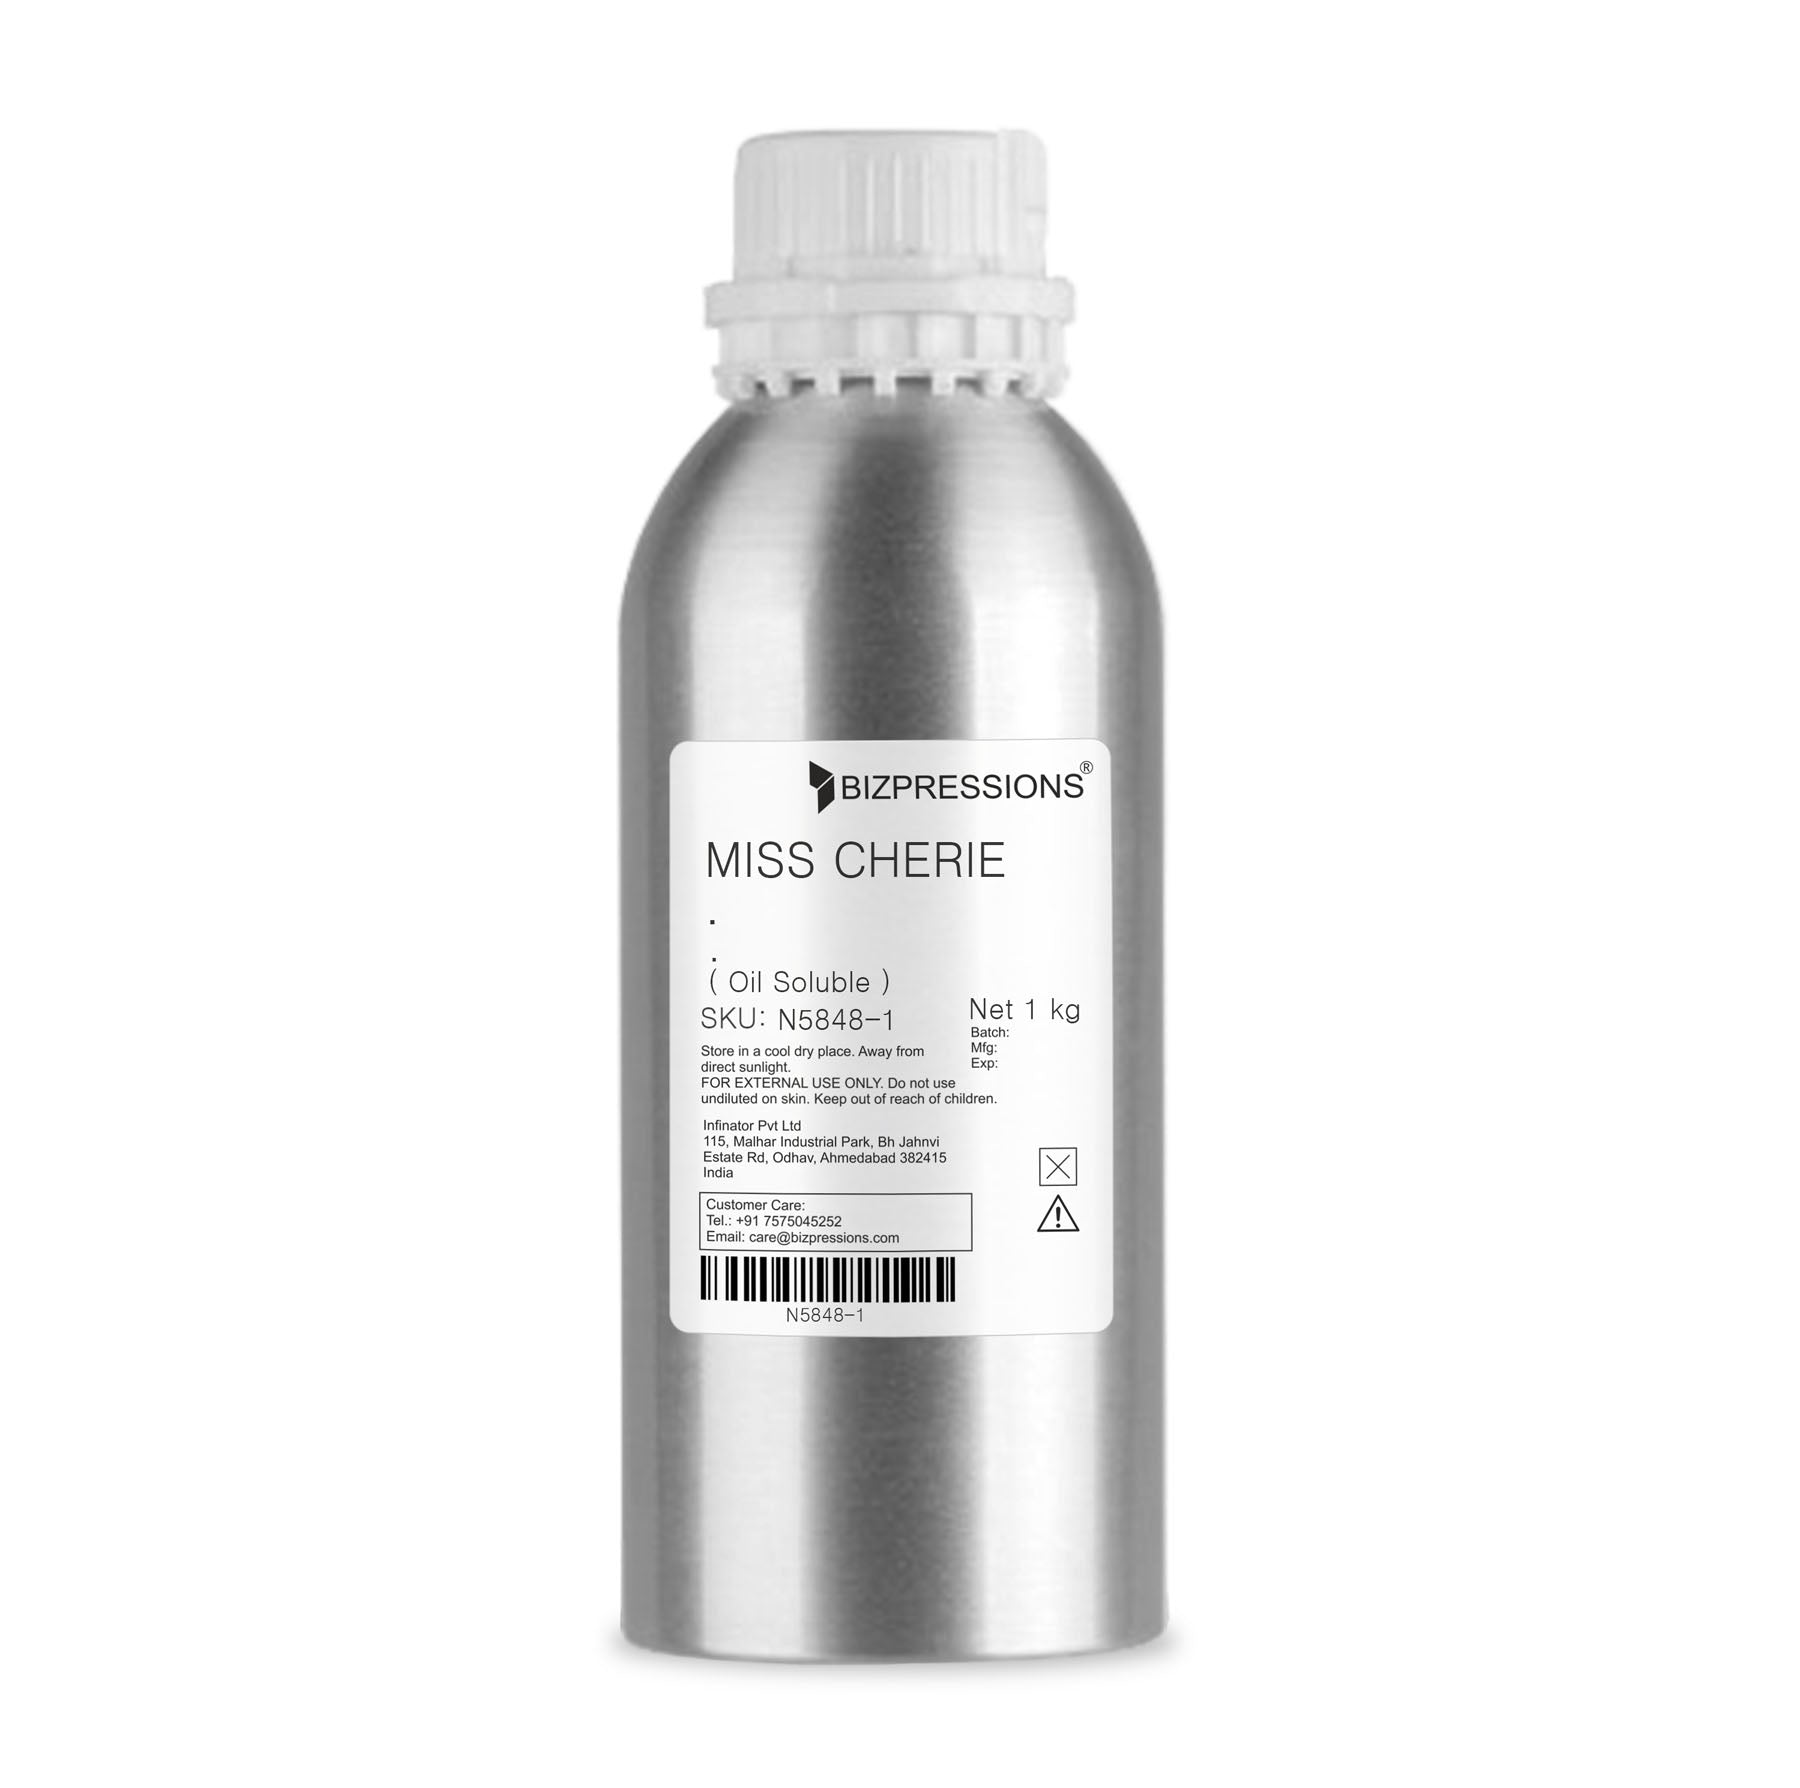 MISS CHERIE - Fragrance ( Oil Soluble ) - 1 kg